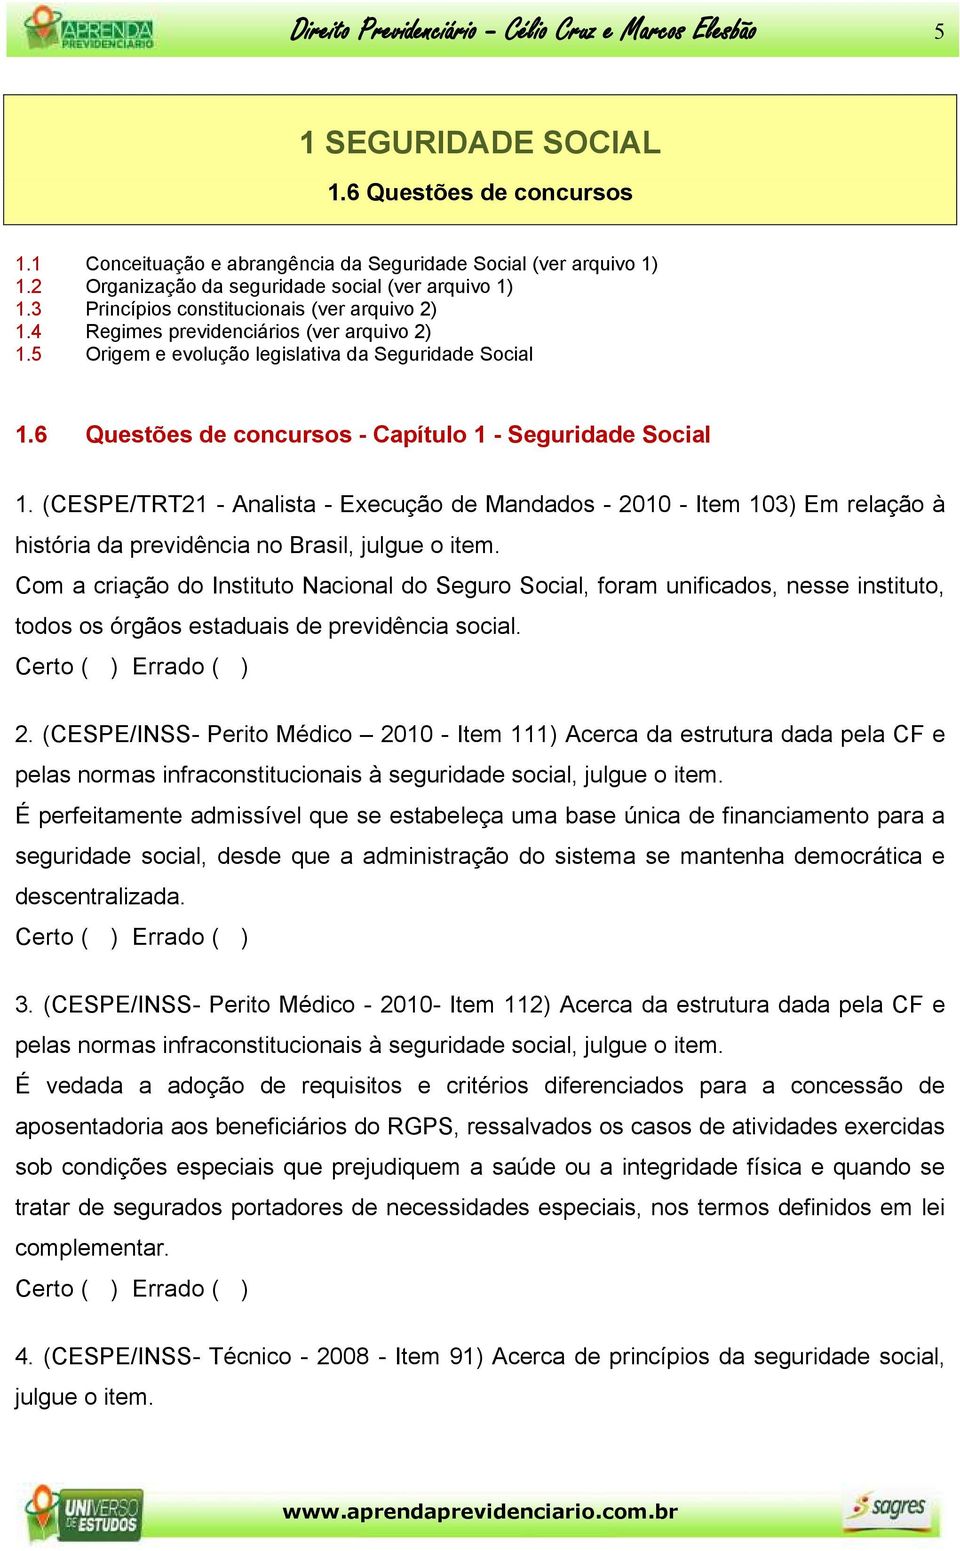 6 Questões de concursos - Capítulo 1 - Seguridade Social 1. (CESPE/TRT21 - Analista - Execução de Mandados - 2010 - Item 103) Em relação à história da previdência no Brasil, julgue o item.